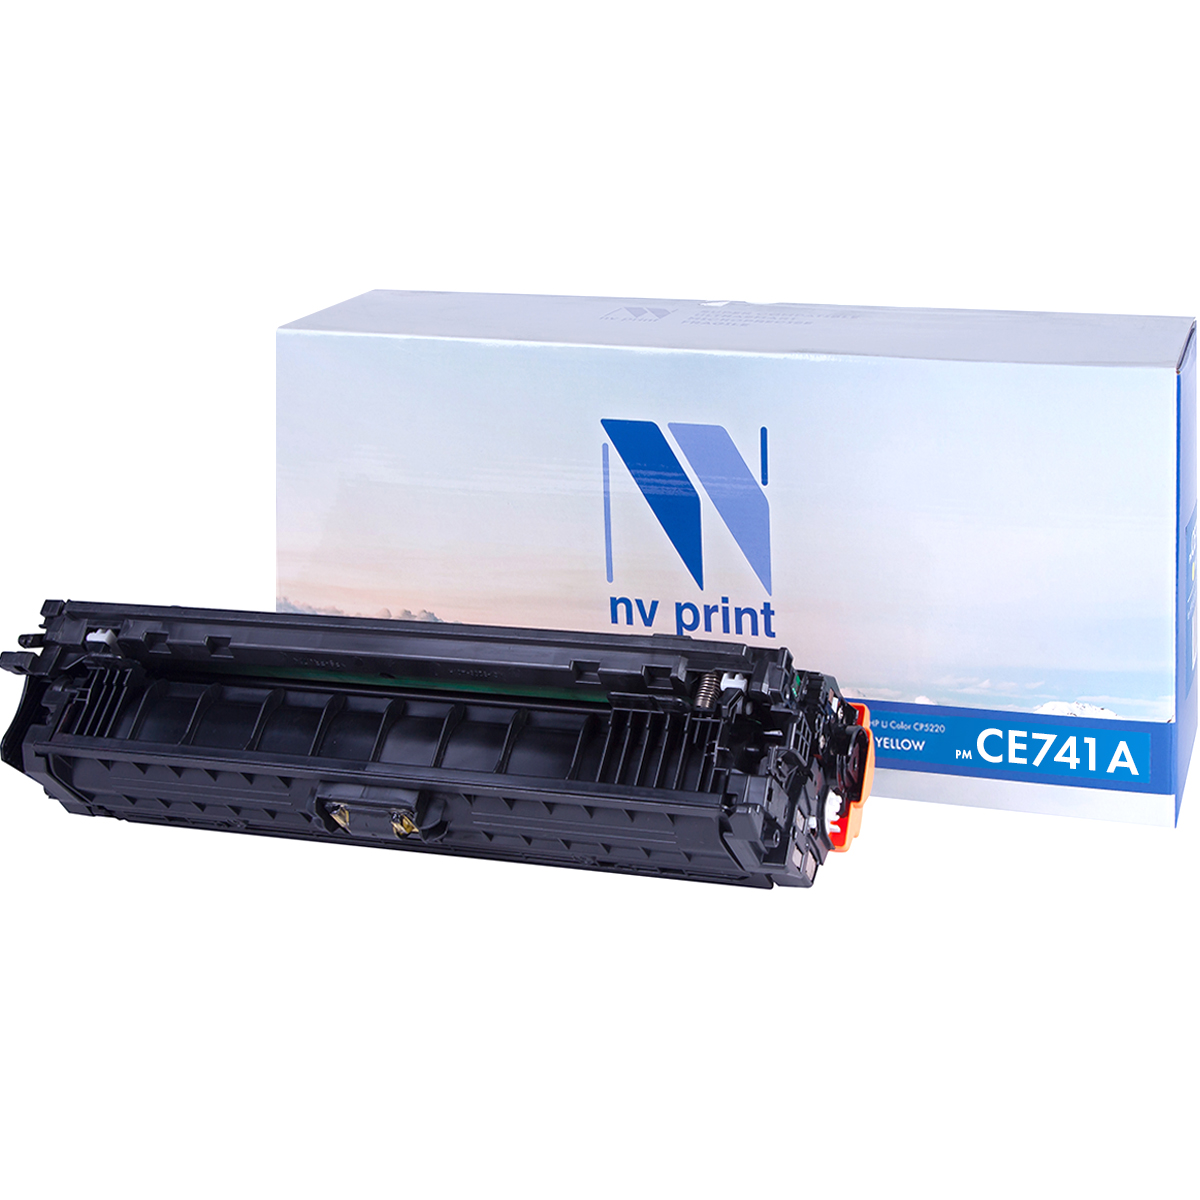   NV-Print  HP LaserJet Color CP5220/CP5225, CE741A Cyan